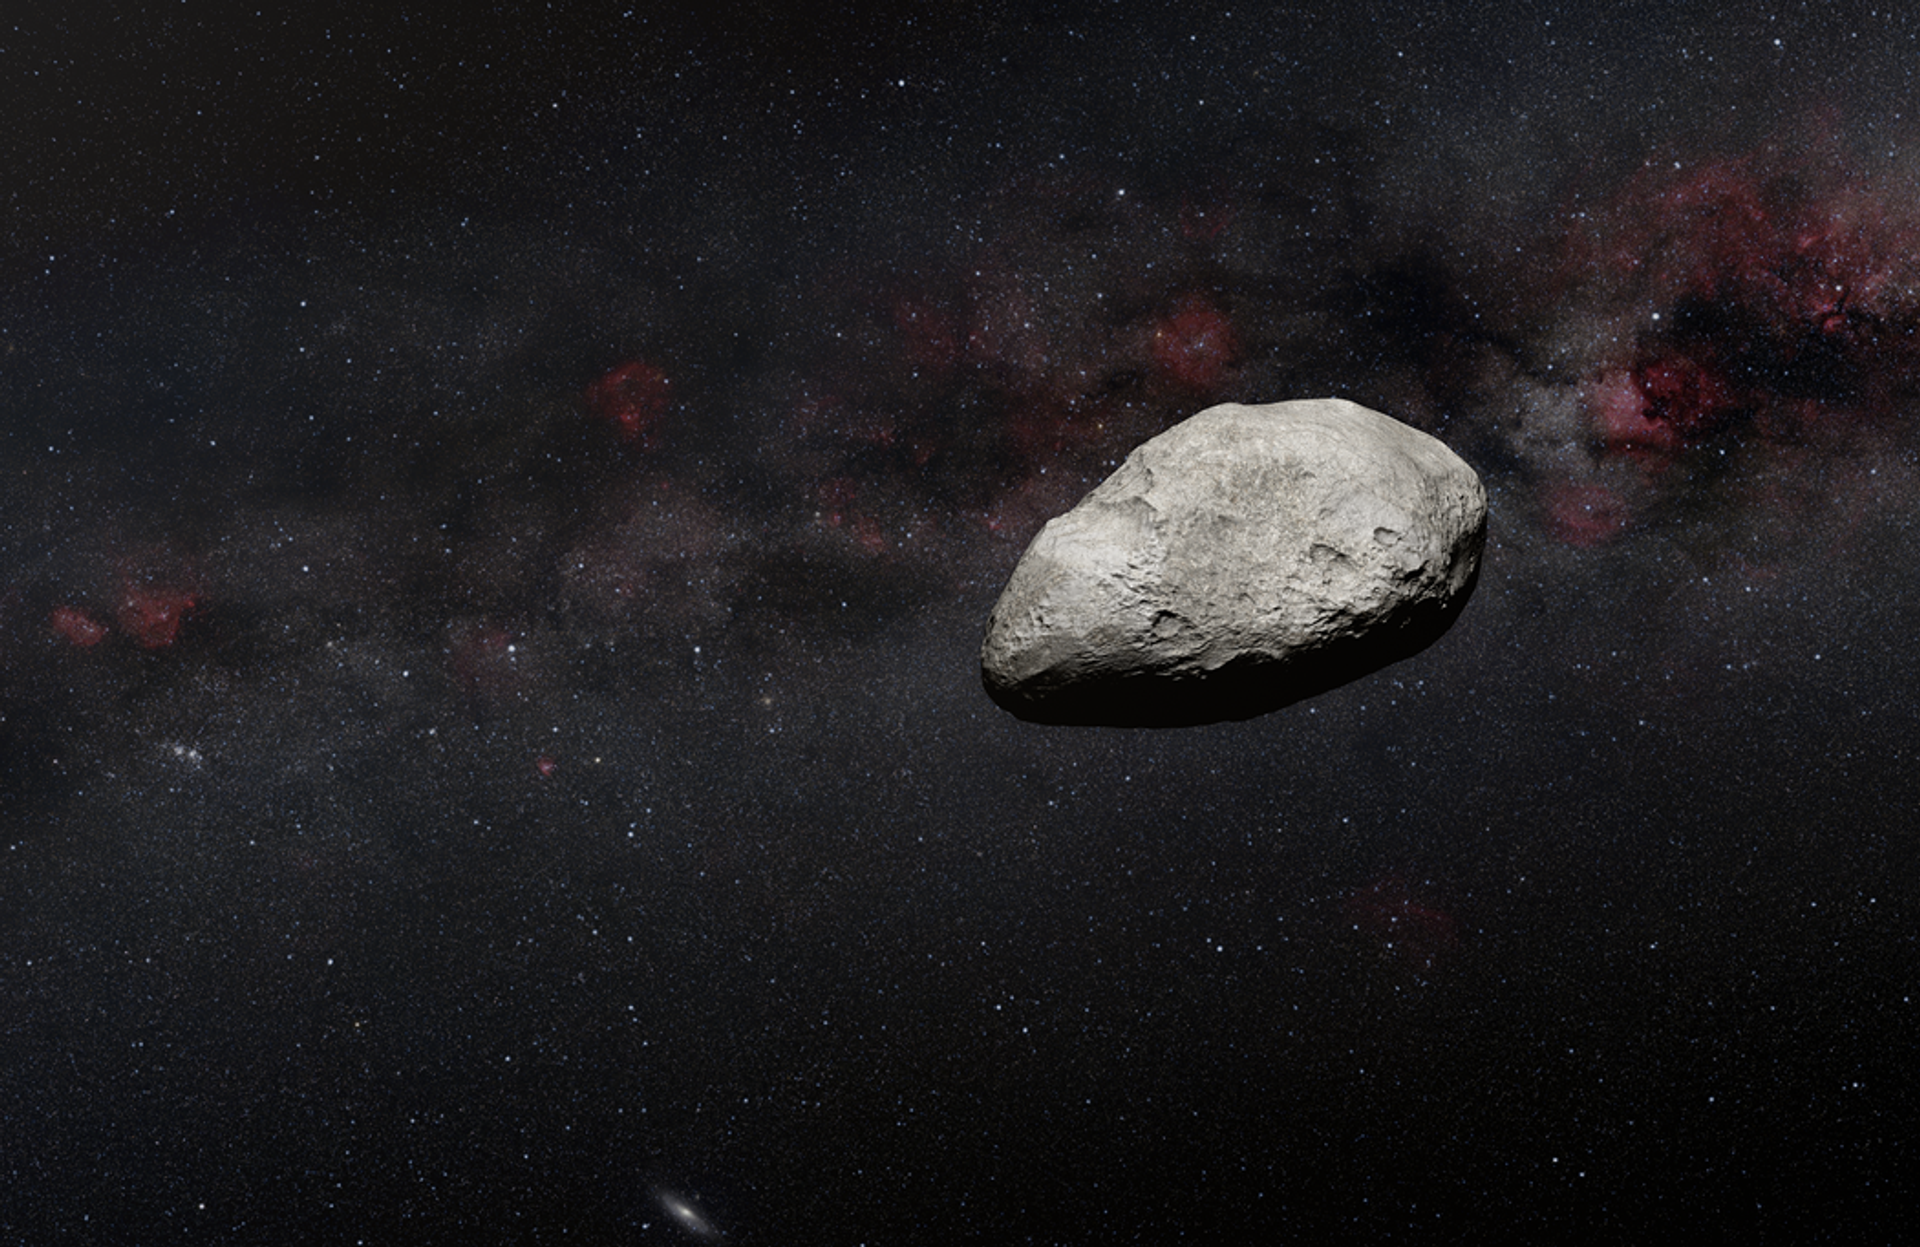 O Telescópio Espacial James Webb detectou um asteroide de 100 a 200 metros de comprimento no Cinturão Principal, entre Marte e Júpiter - Sputnik Brasil, 1920, 07.02.2023